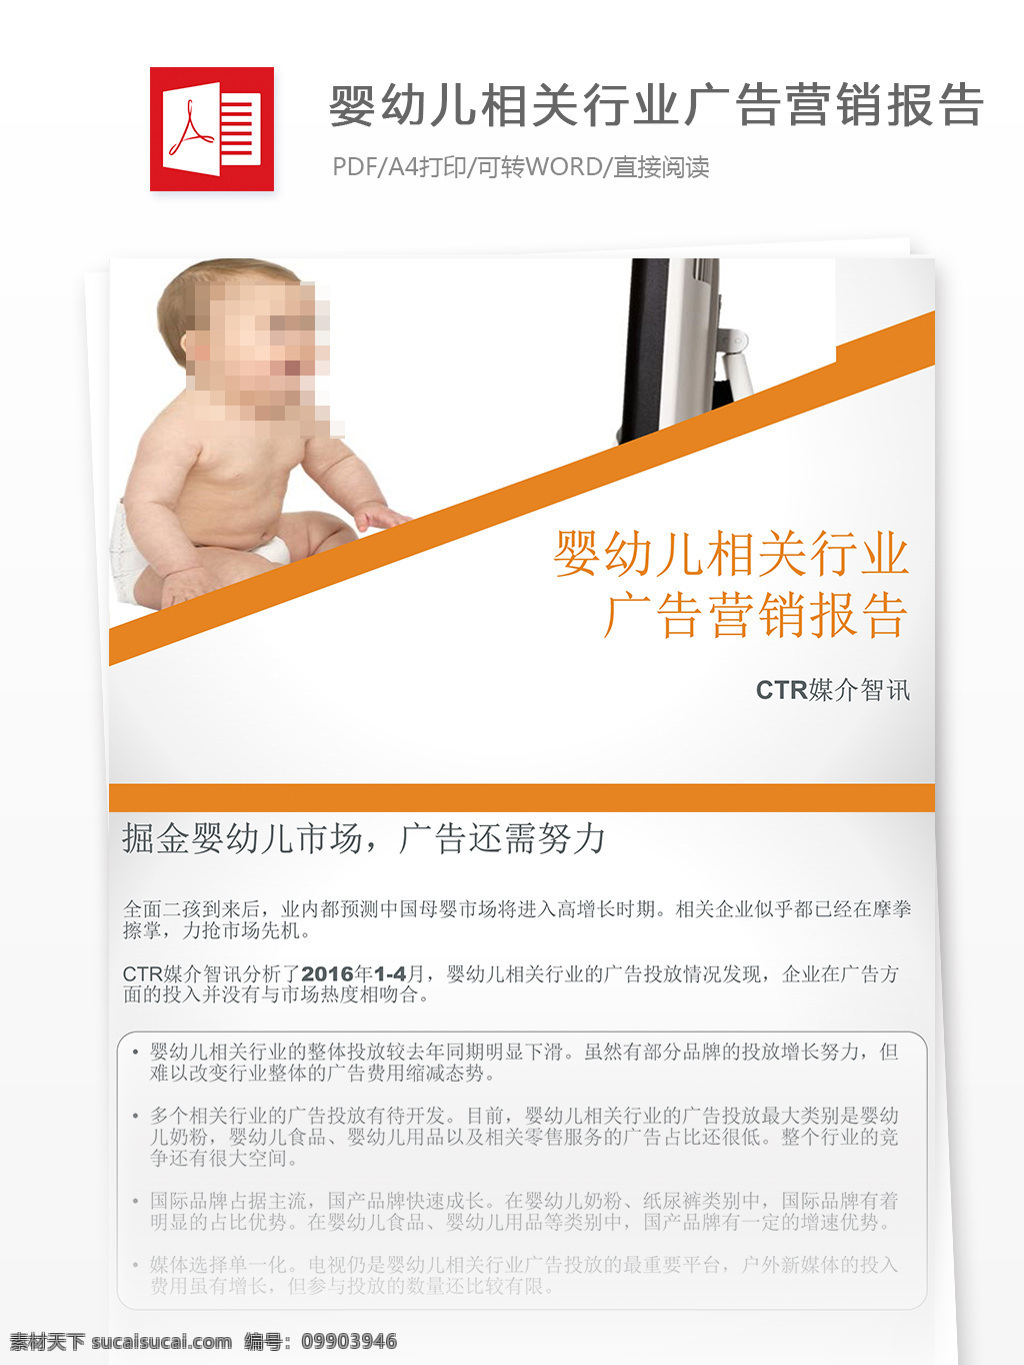 婴幼儿 相关 行业 广告营销 报告书 行业分析报告 报告模板 广告模板 广告公关 广告报告 广告 数据报告 互联网广告 互联网 广告分析报告 分析报告